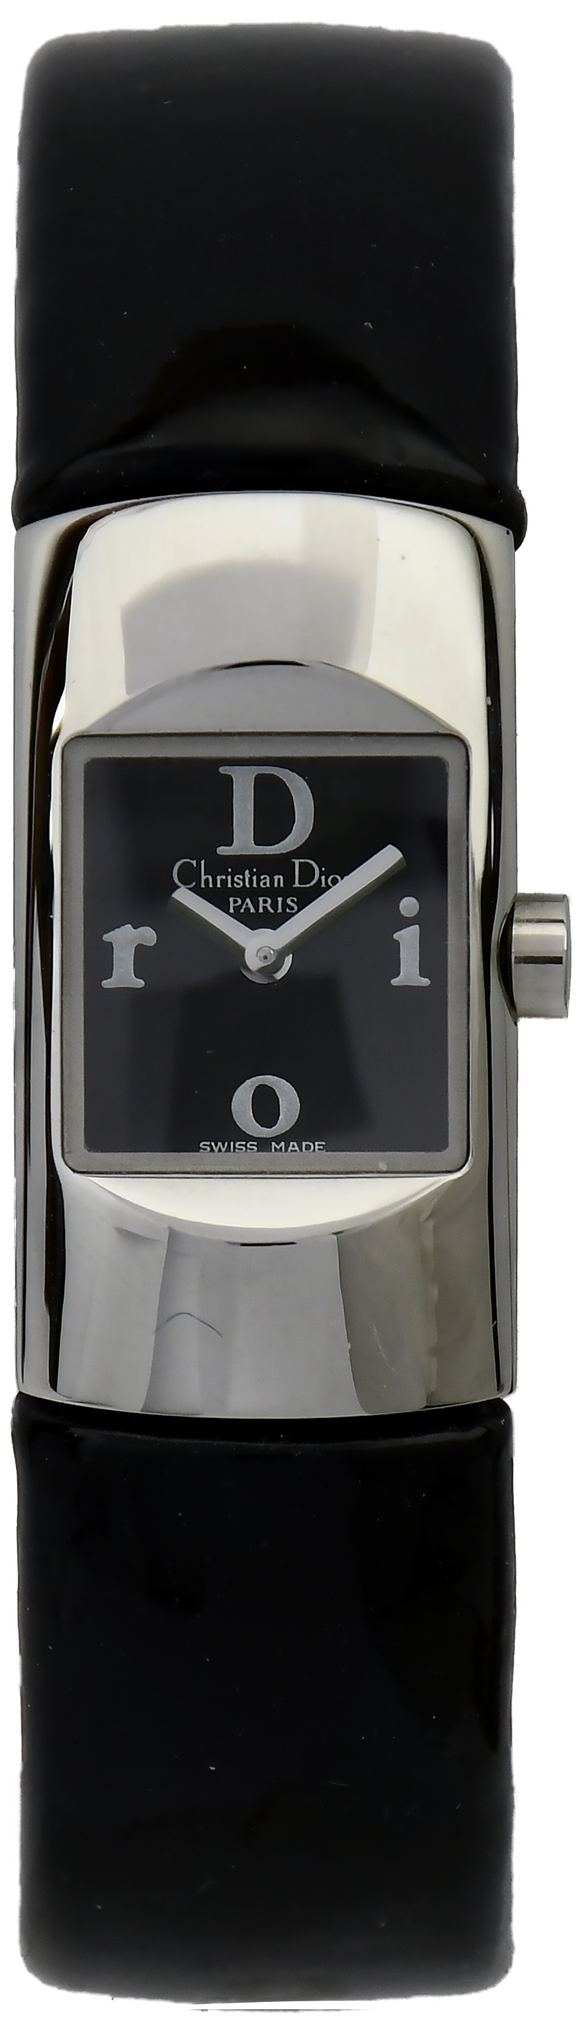 Christian Dior D102-100-NON - Parini's